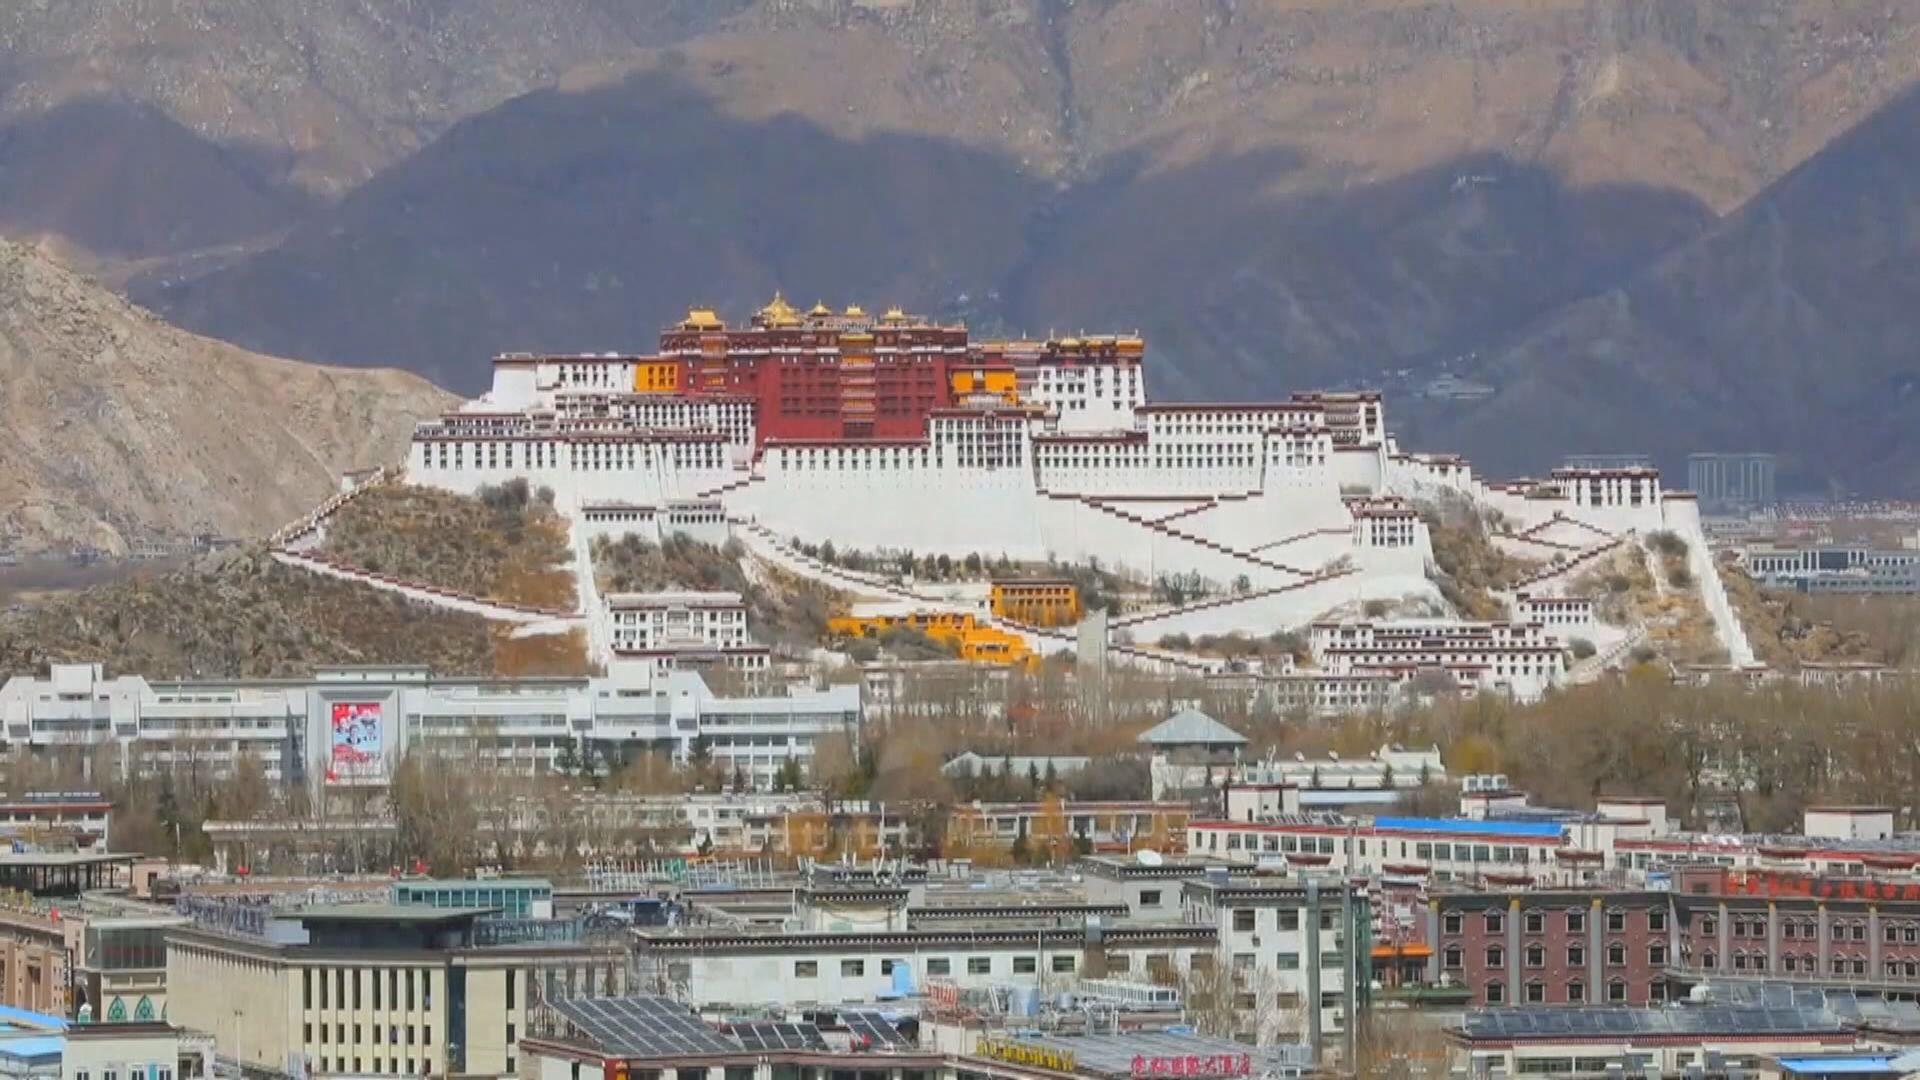 國新辦發表白皮書 強調西藏長治久安須強邊